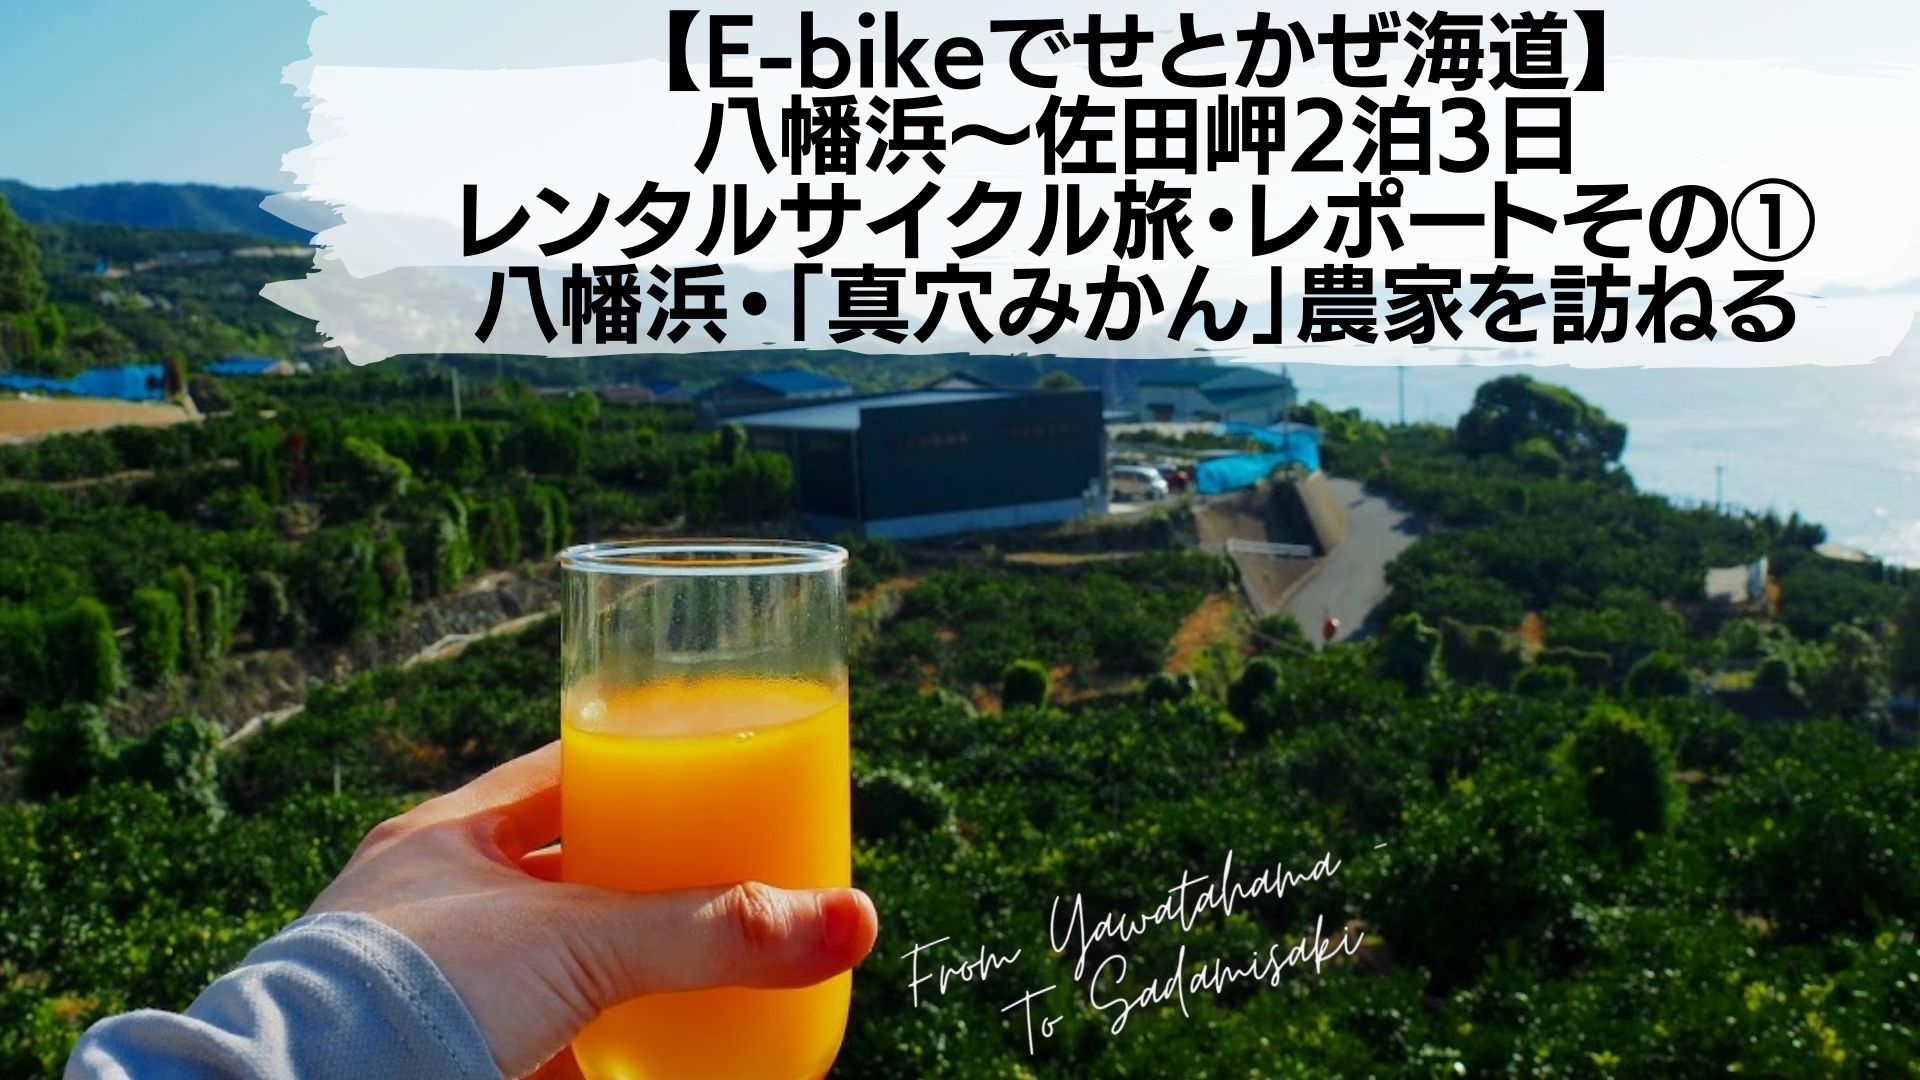 自転車de瀬戸内旅 広島県呉市 ゲストハウスクトマレ に泊まってきたよ 高知に移住したのーてんき女のブログ